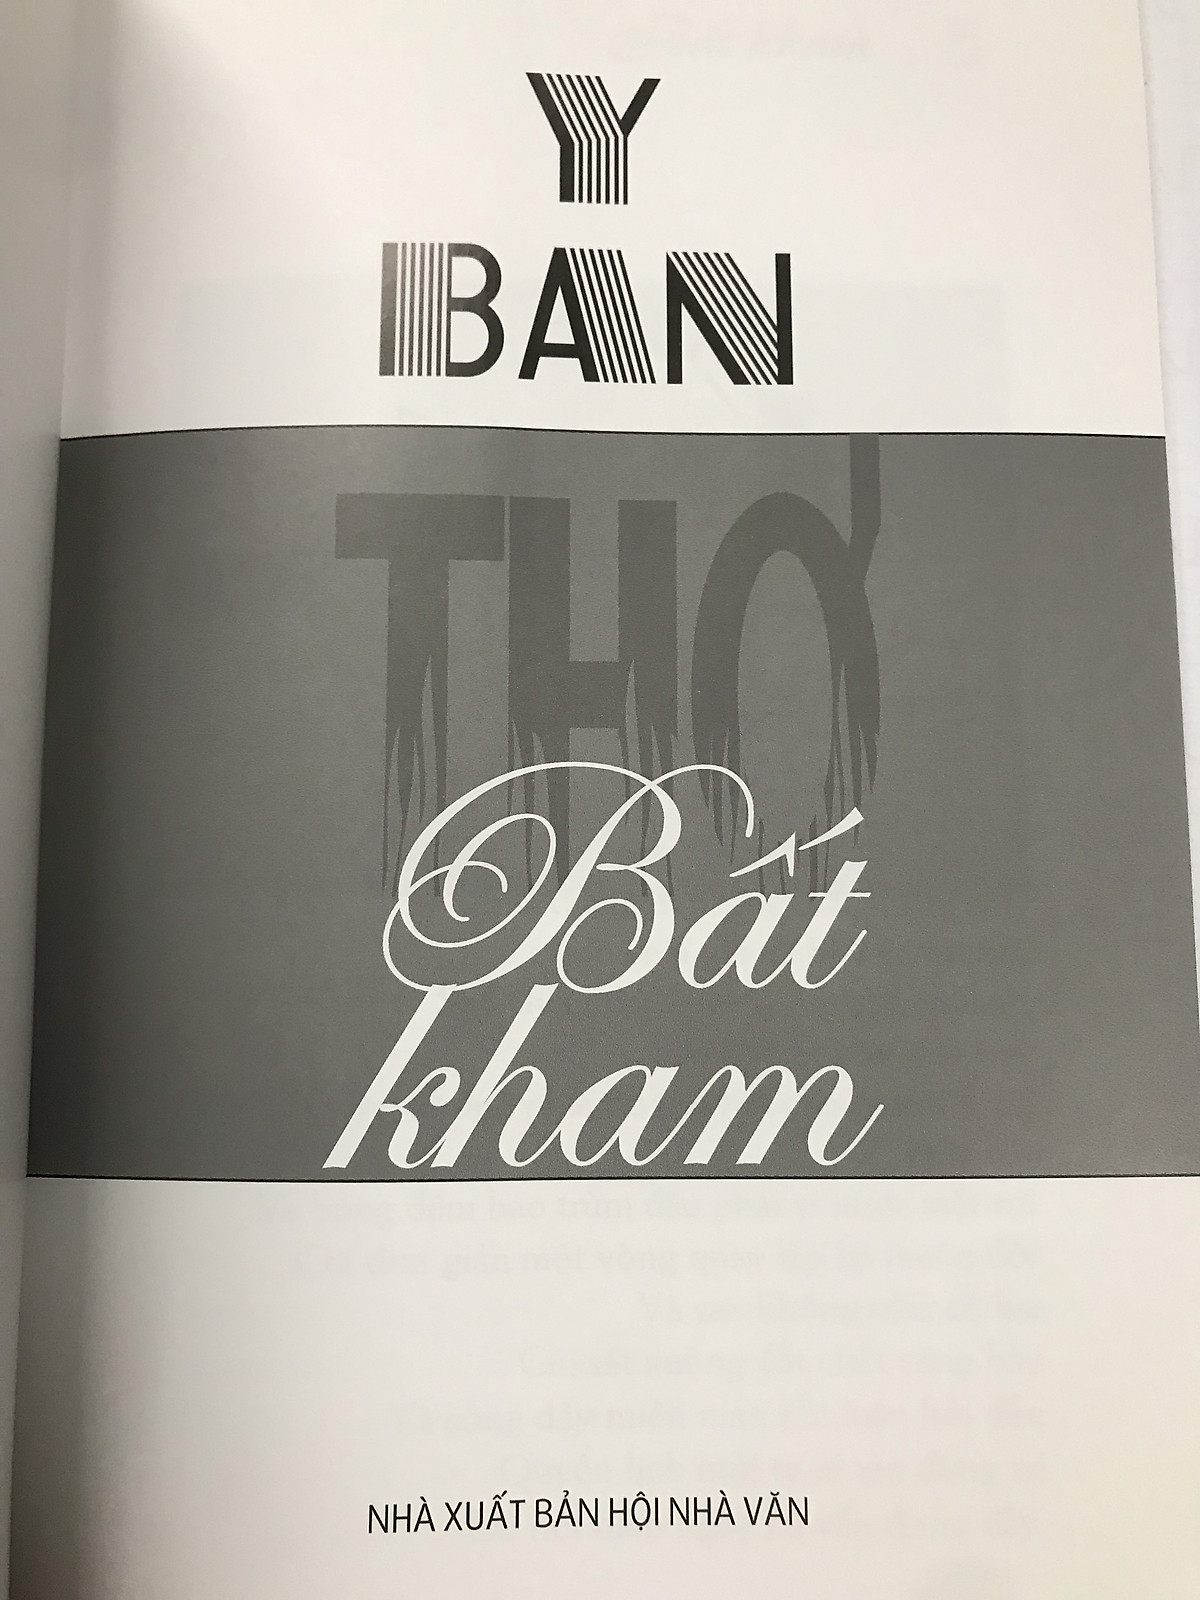 Bất Kham - tập thơ của nhà văn Y Ban